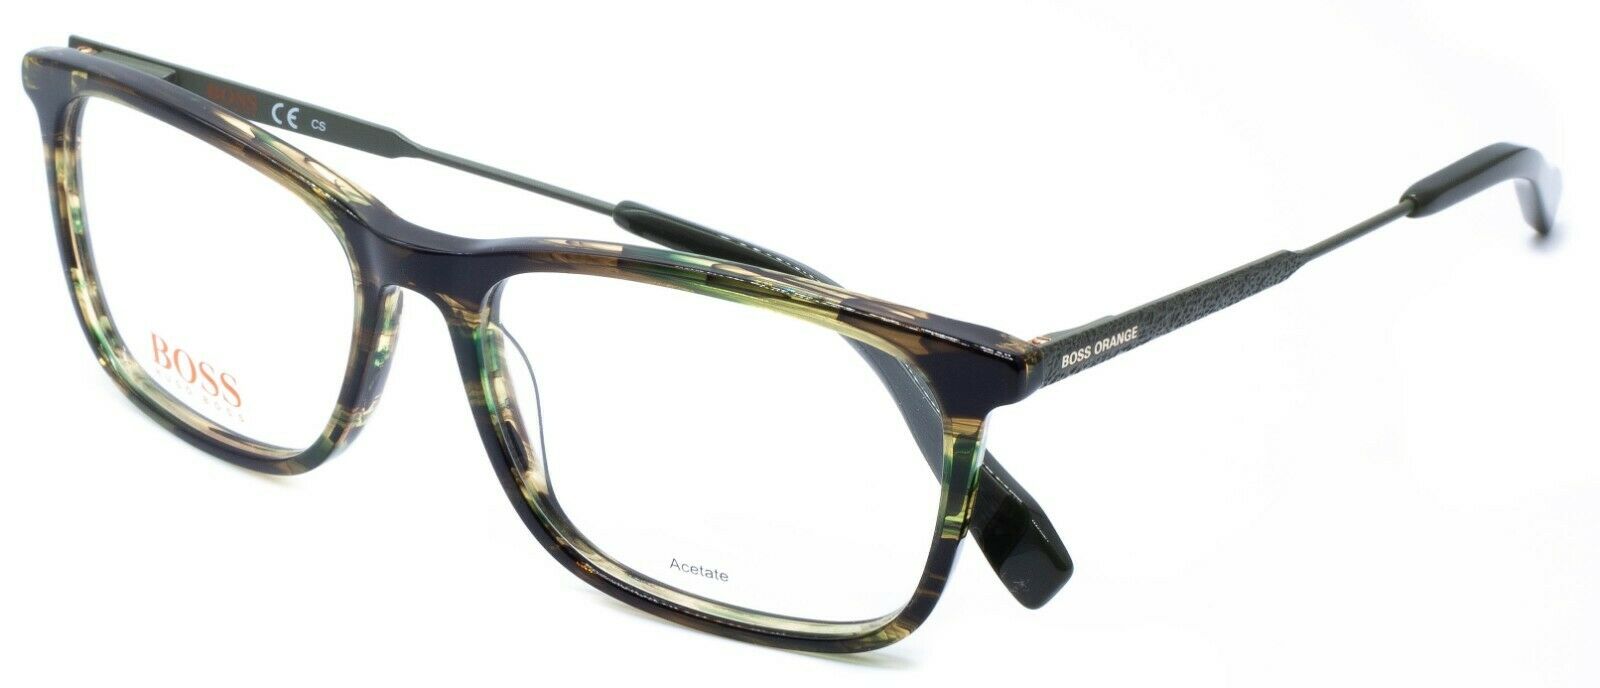 BOSS ORANGE BO 0307 PF3 53mm Eyewear Glasses FRAMES RX Optical Eyeglasses -  New - GGV Eyewear | Sommerkleider